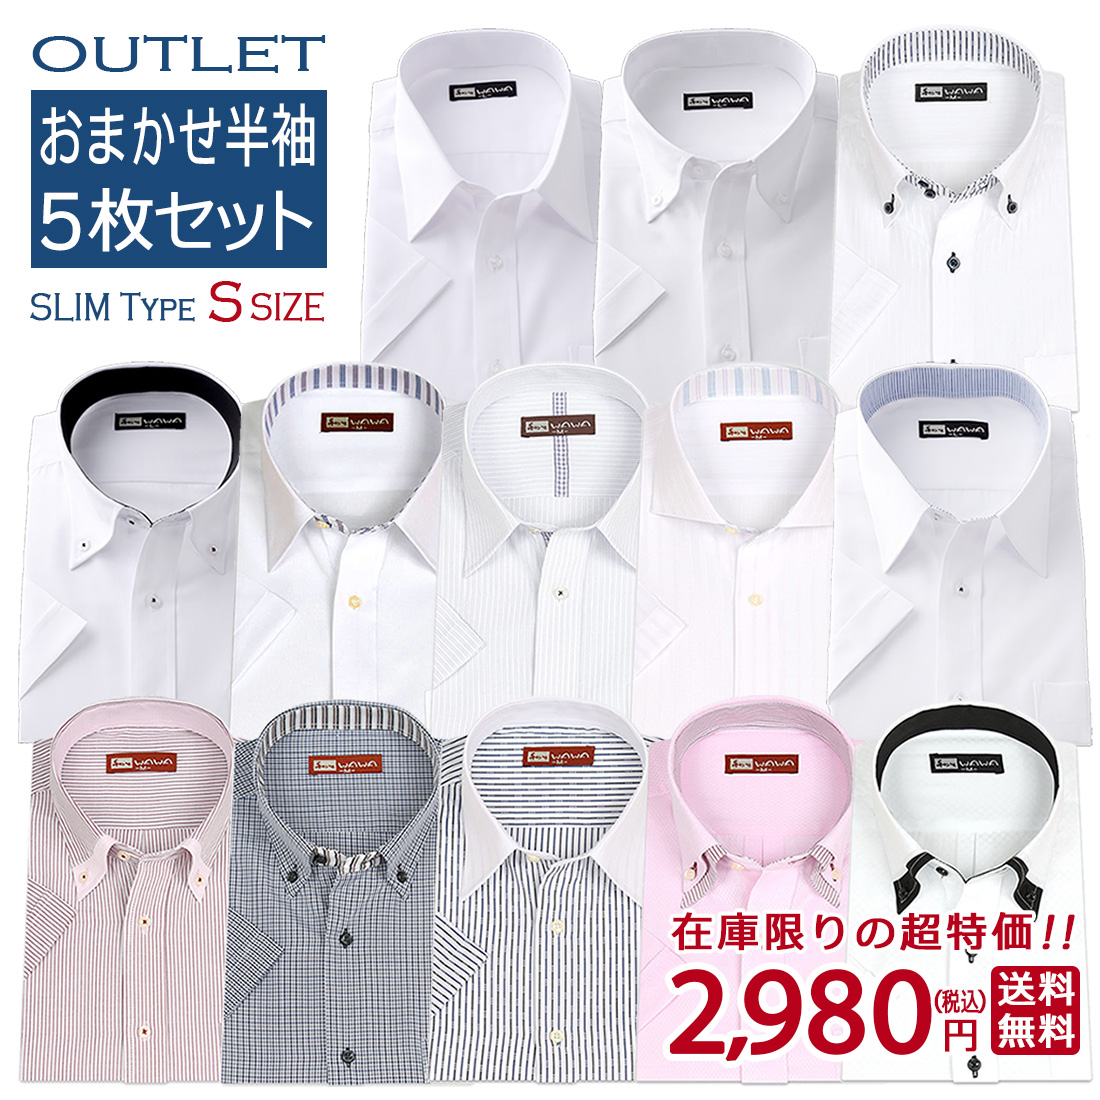 アウトレット 半袖 5枚セット おまかせセット メンズ ワイシャツ レギュラーカラー ボタンダウン スリム S 形態安定 フォーマル ビジネス Yシャツ 送料無料